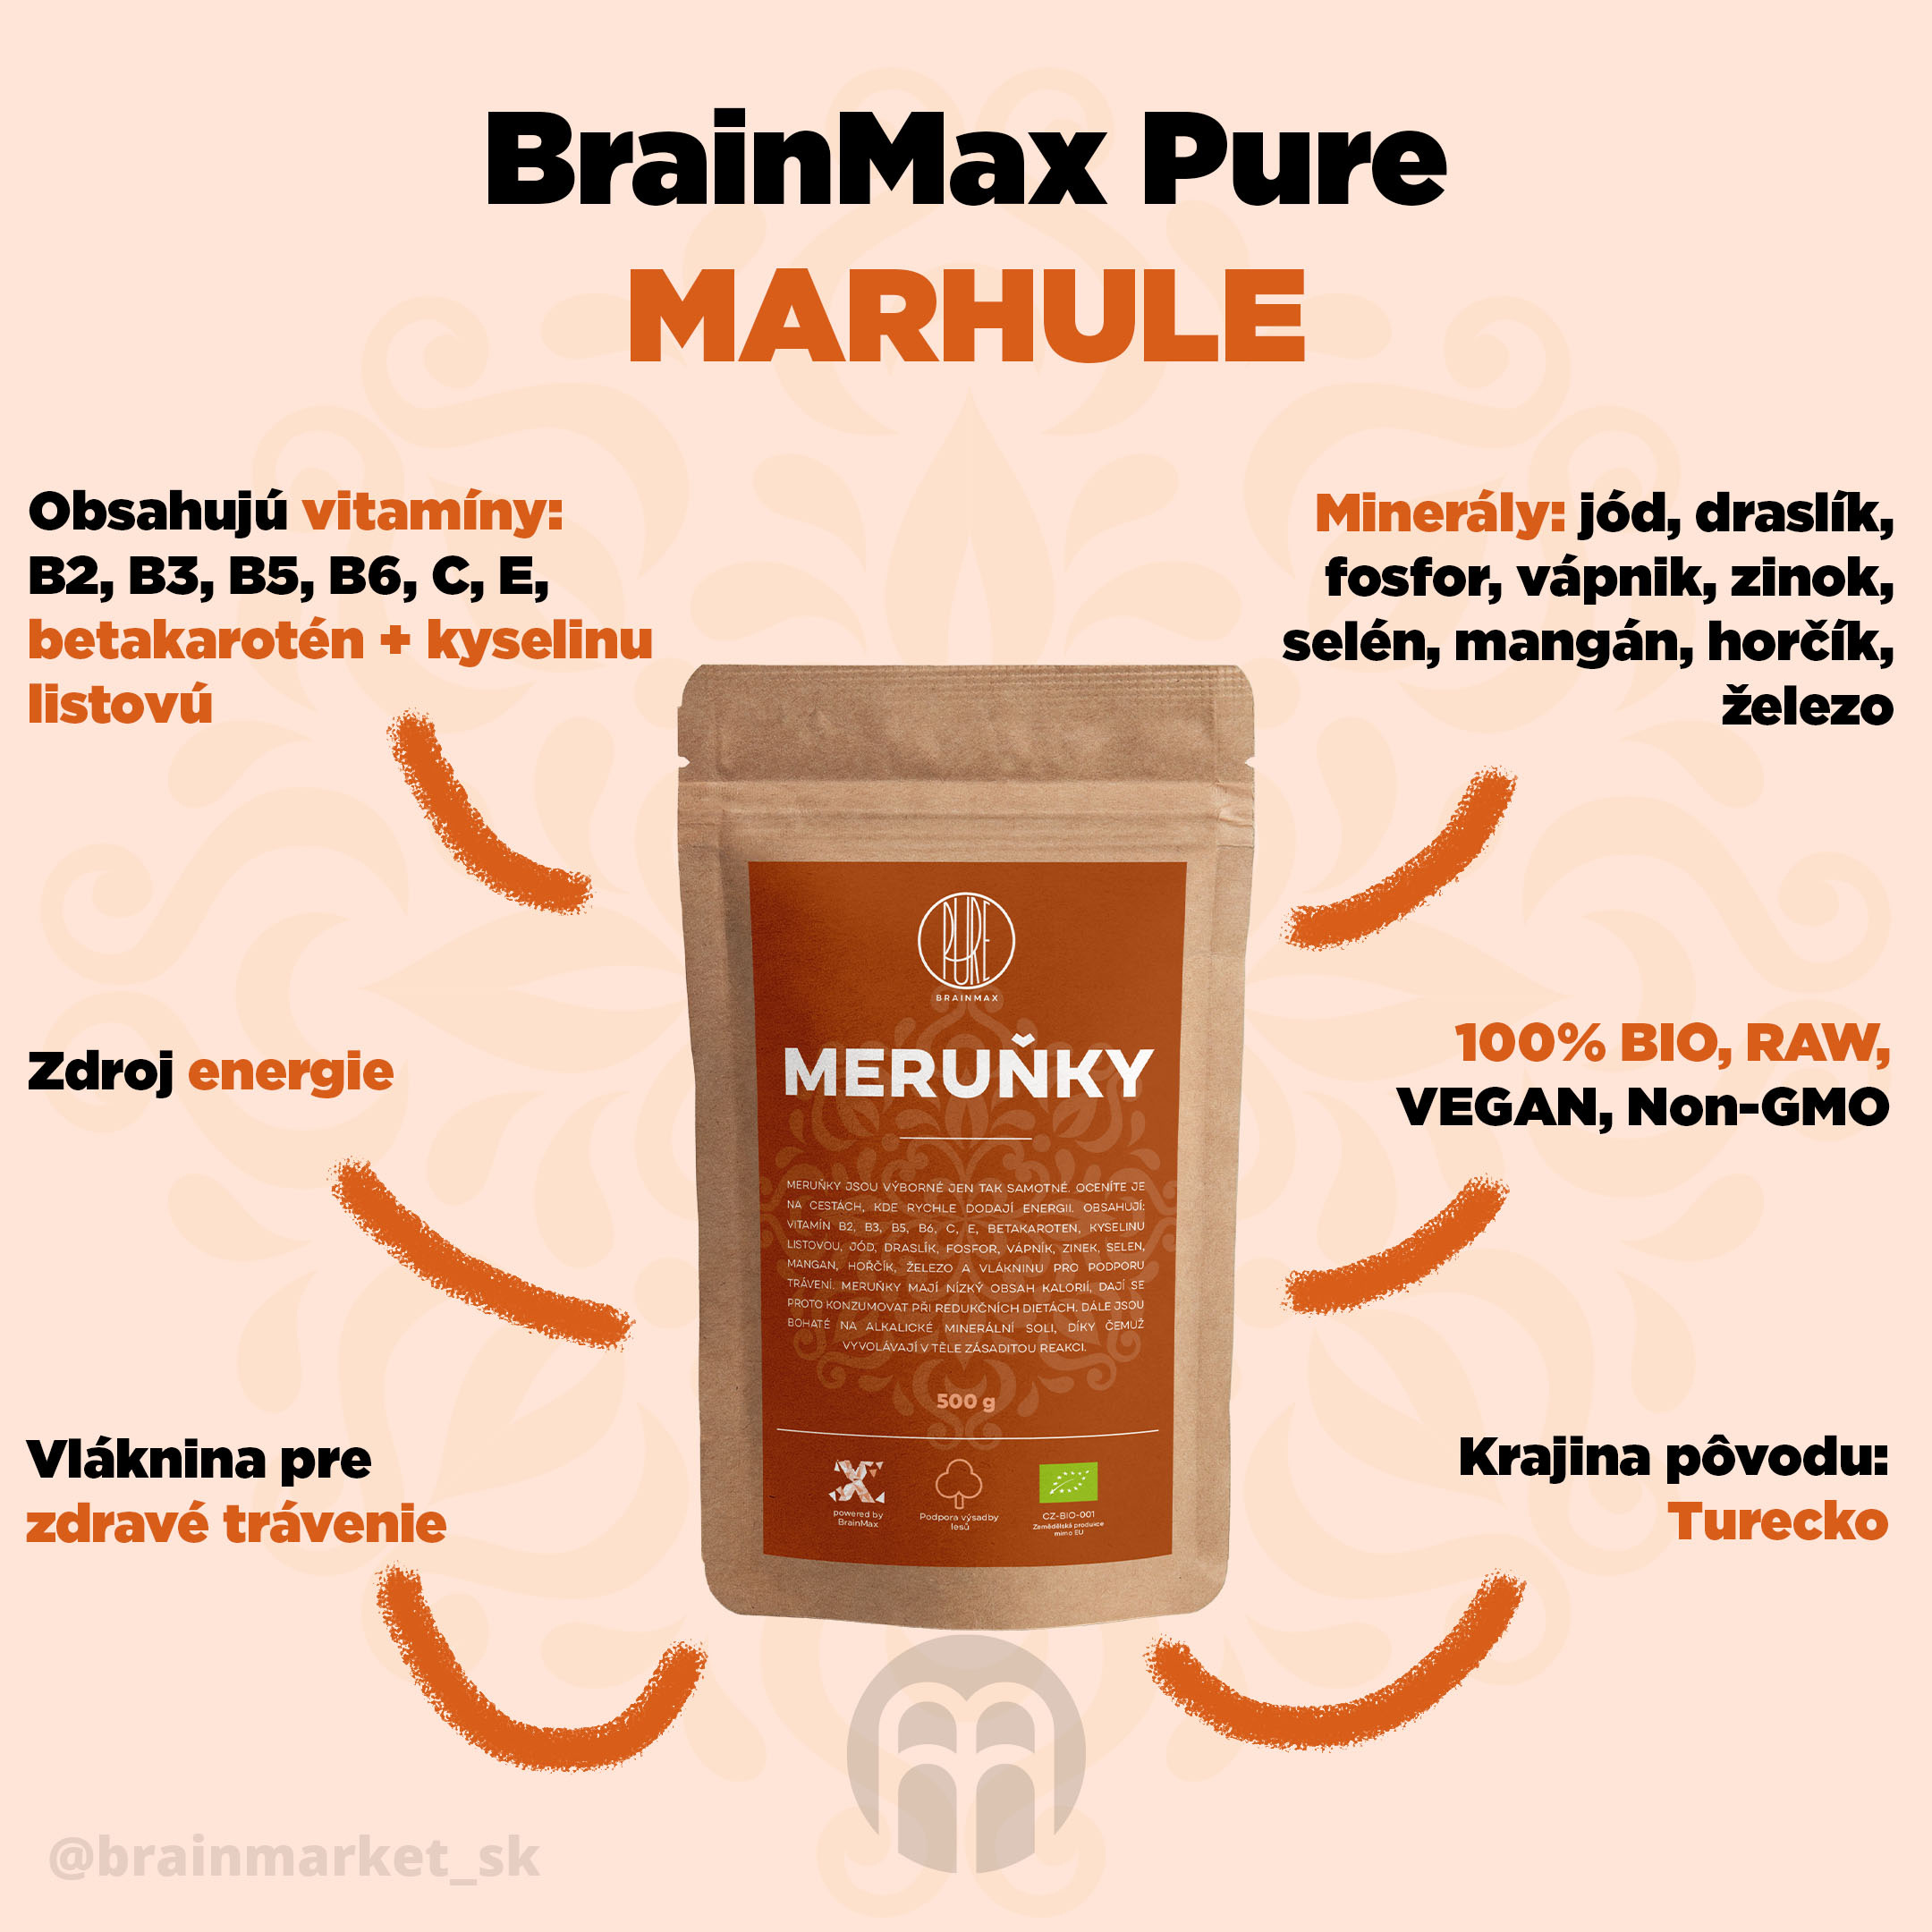 marhule-brainmax-pure-infografika-brainmarket-sk